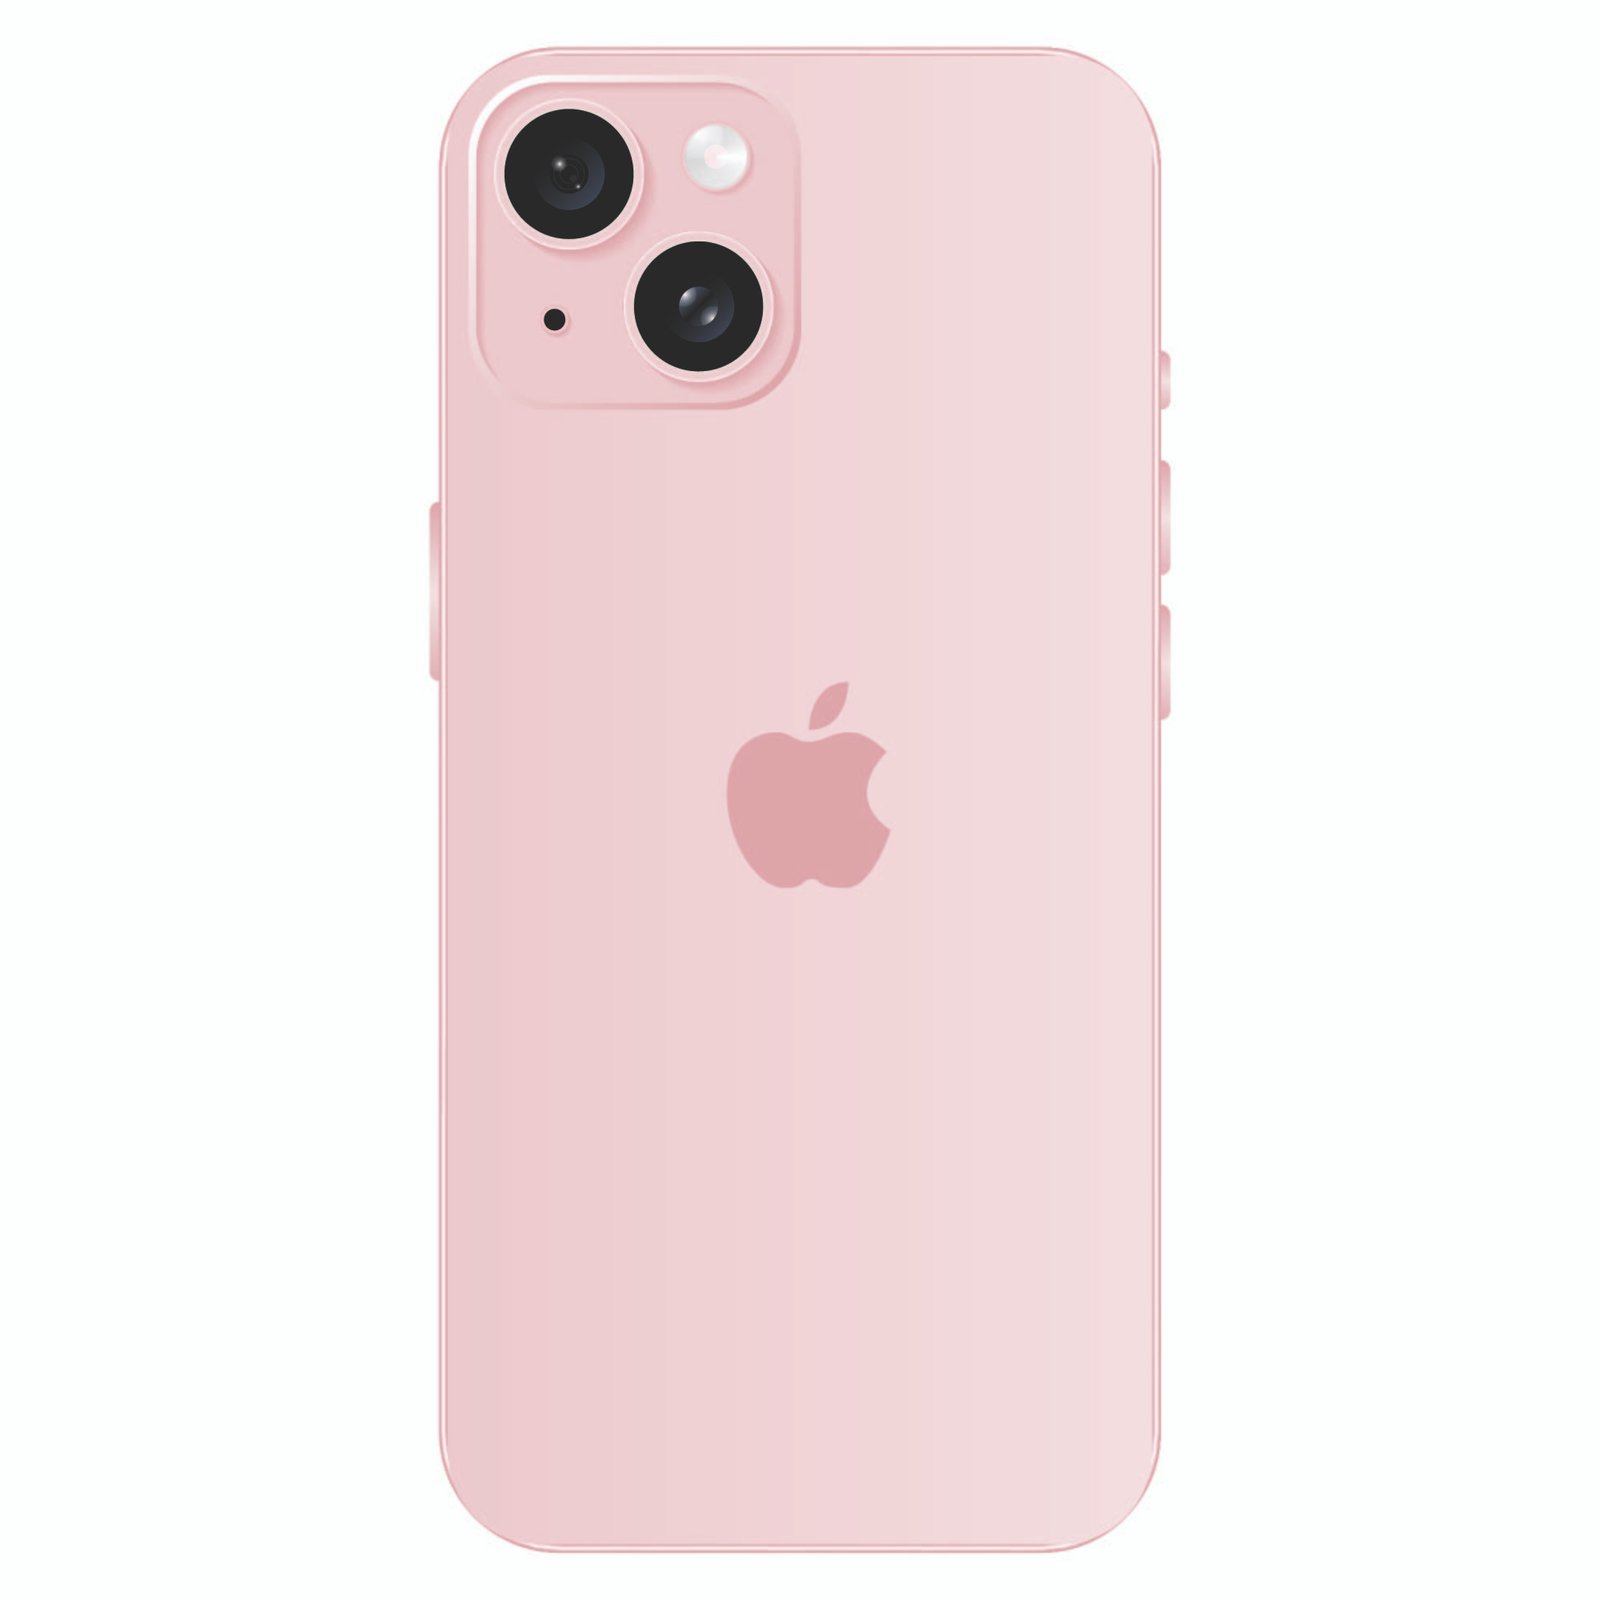 iPhone 15 Case